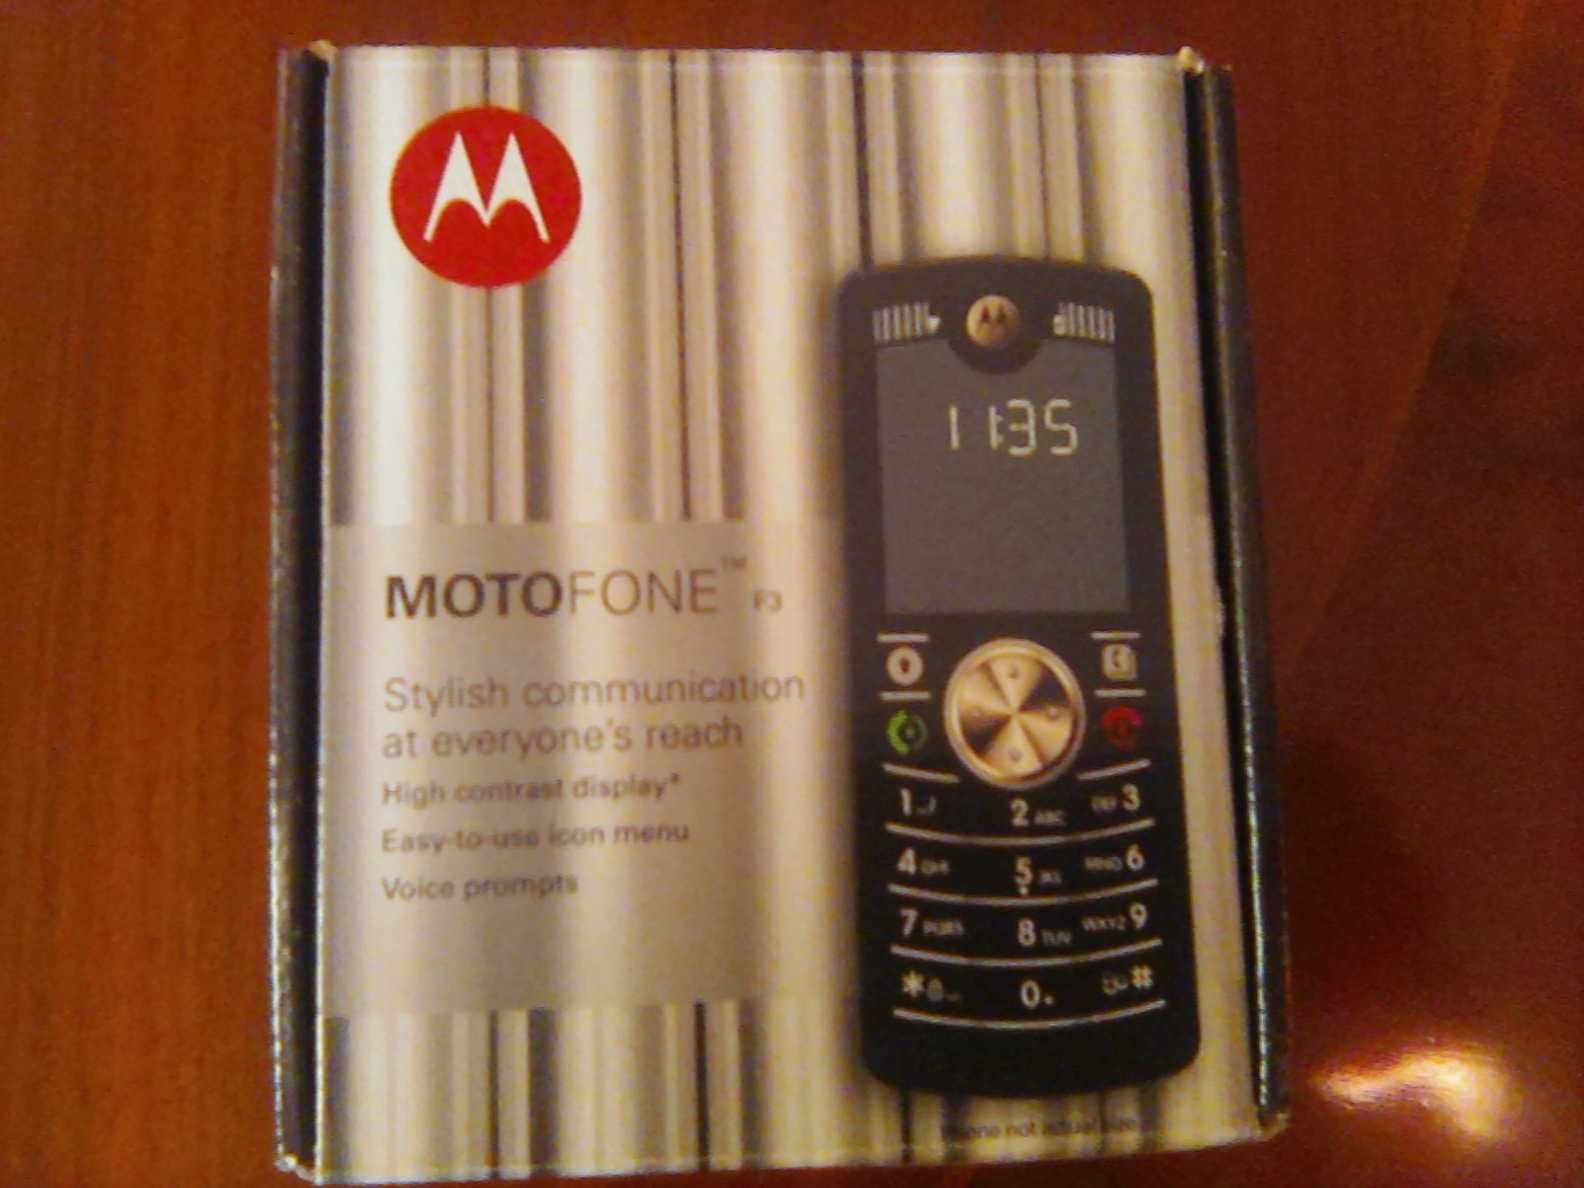 Telemóvel "Motorola" - Novo